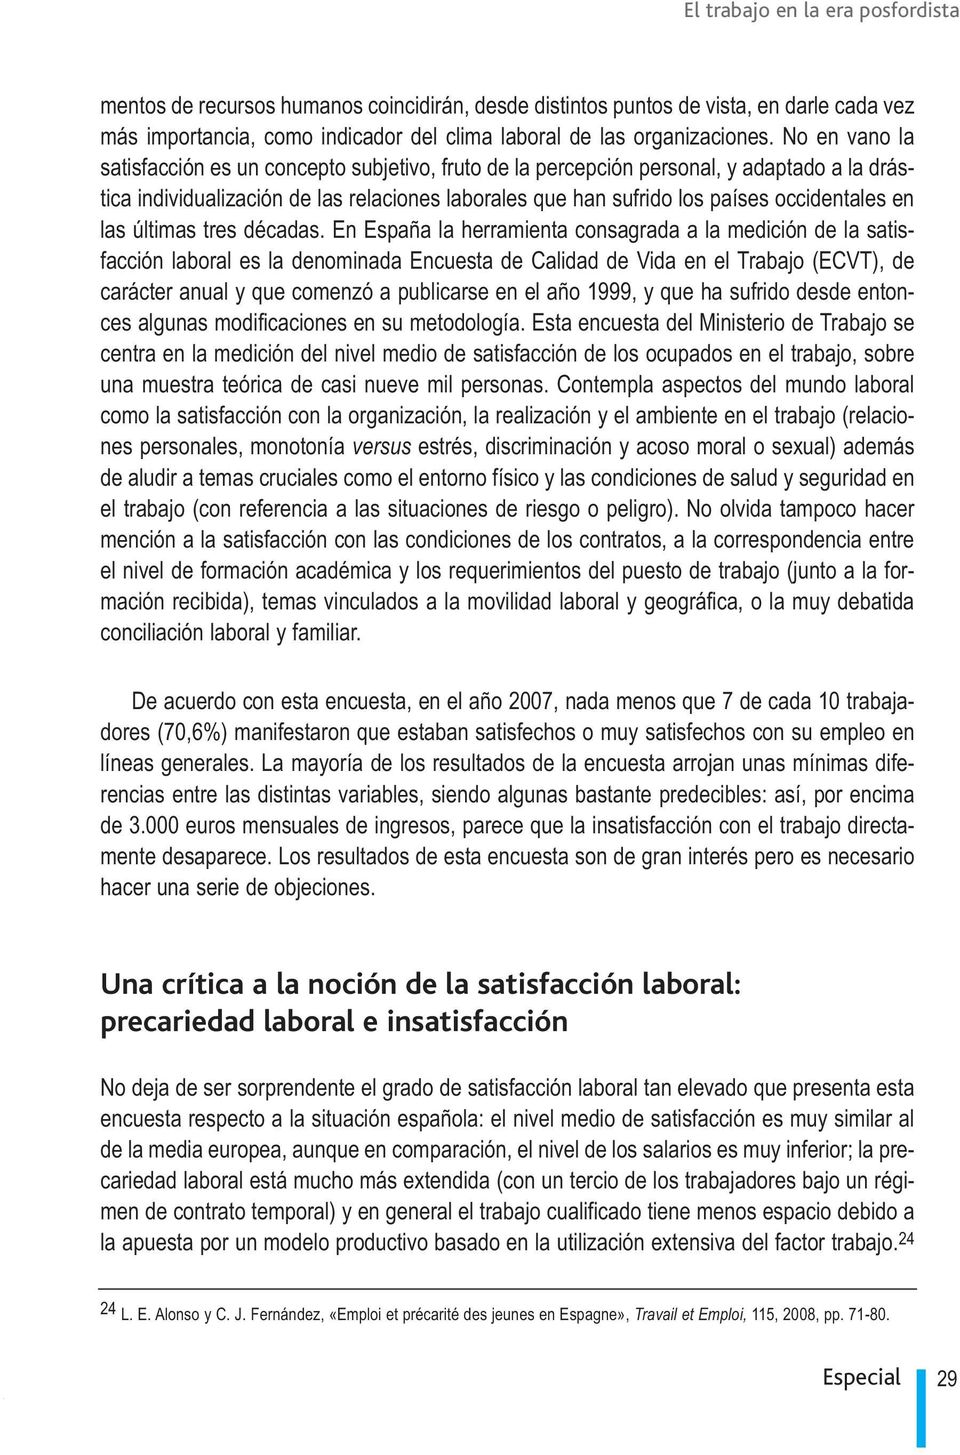 las últimas tres décadas En España la herramienta consagrada a la medición de la satisfacción laboral es la denominada Encuesta de Calidad de Vida en el Trabajo (ECVT), de carácter anual y que